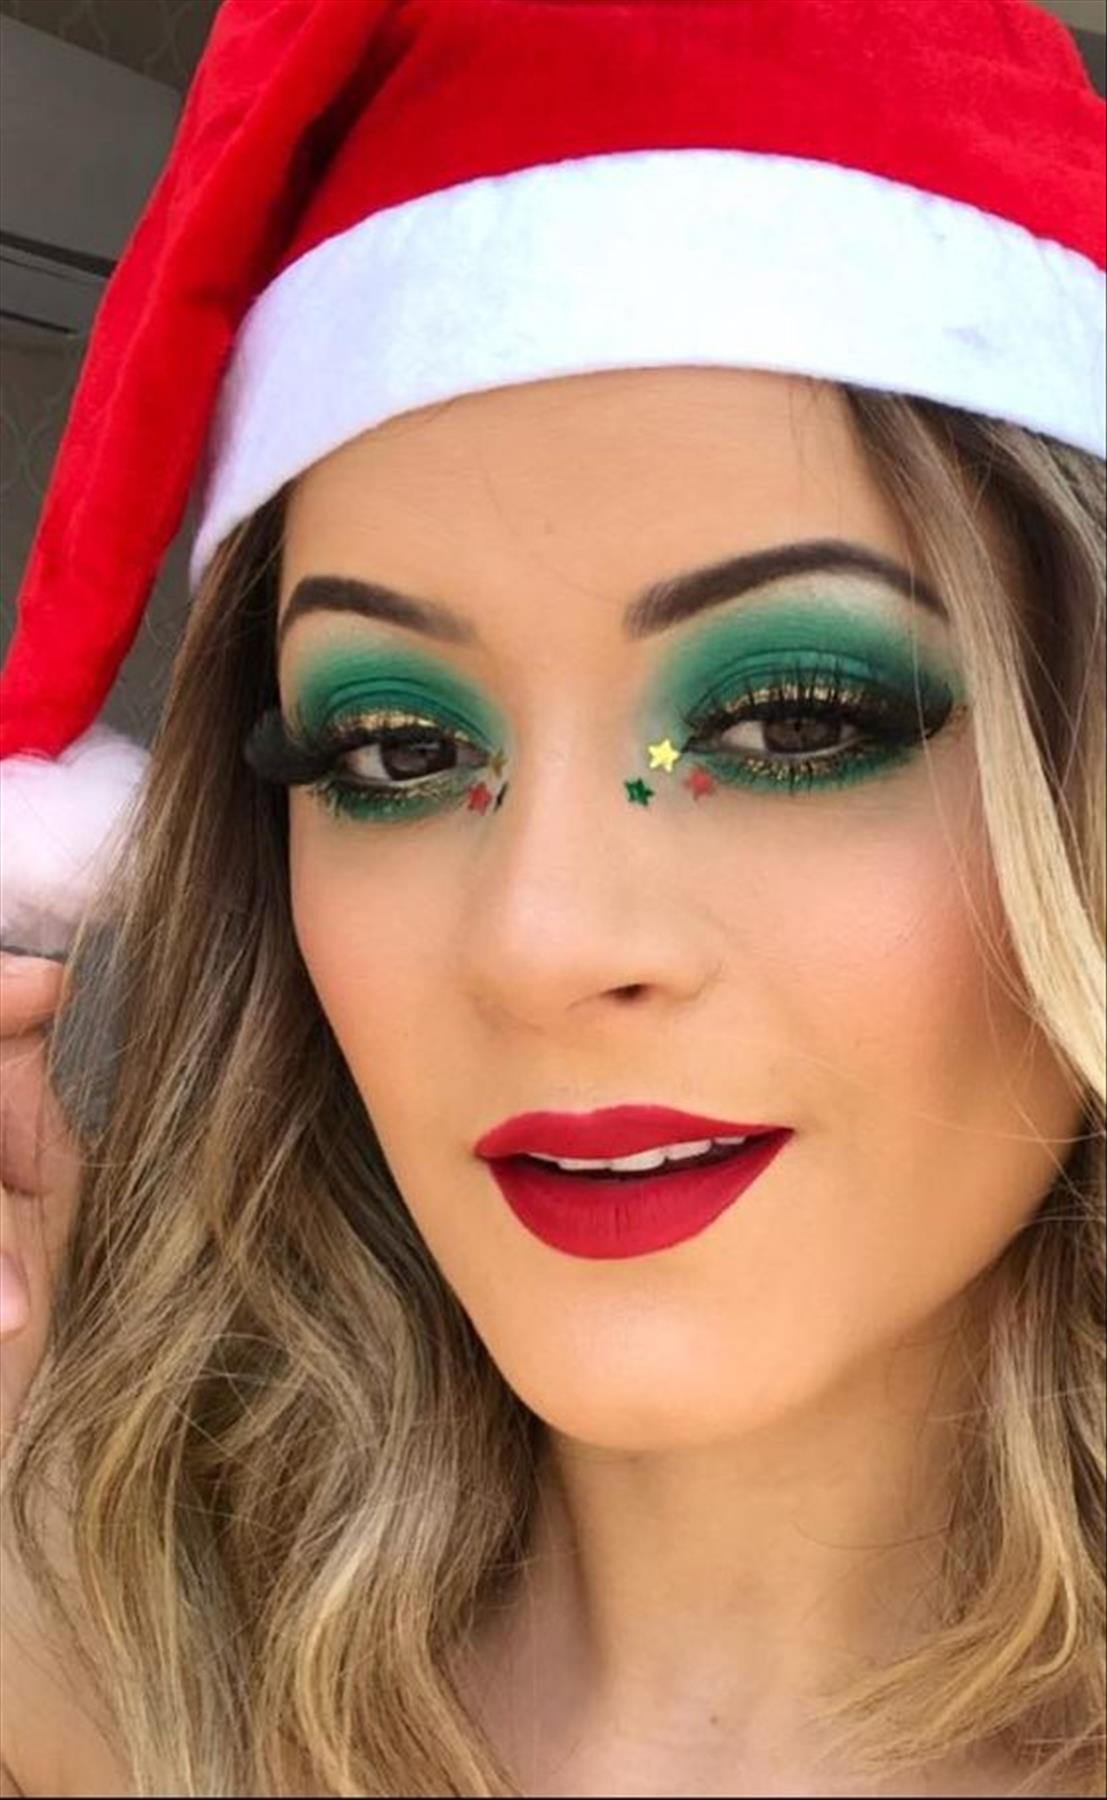 Festliches Weihnachts-Make-up sieht Ideen aus, um den Urlaub zu genießen